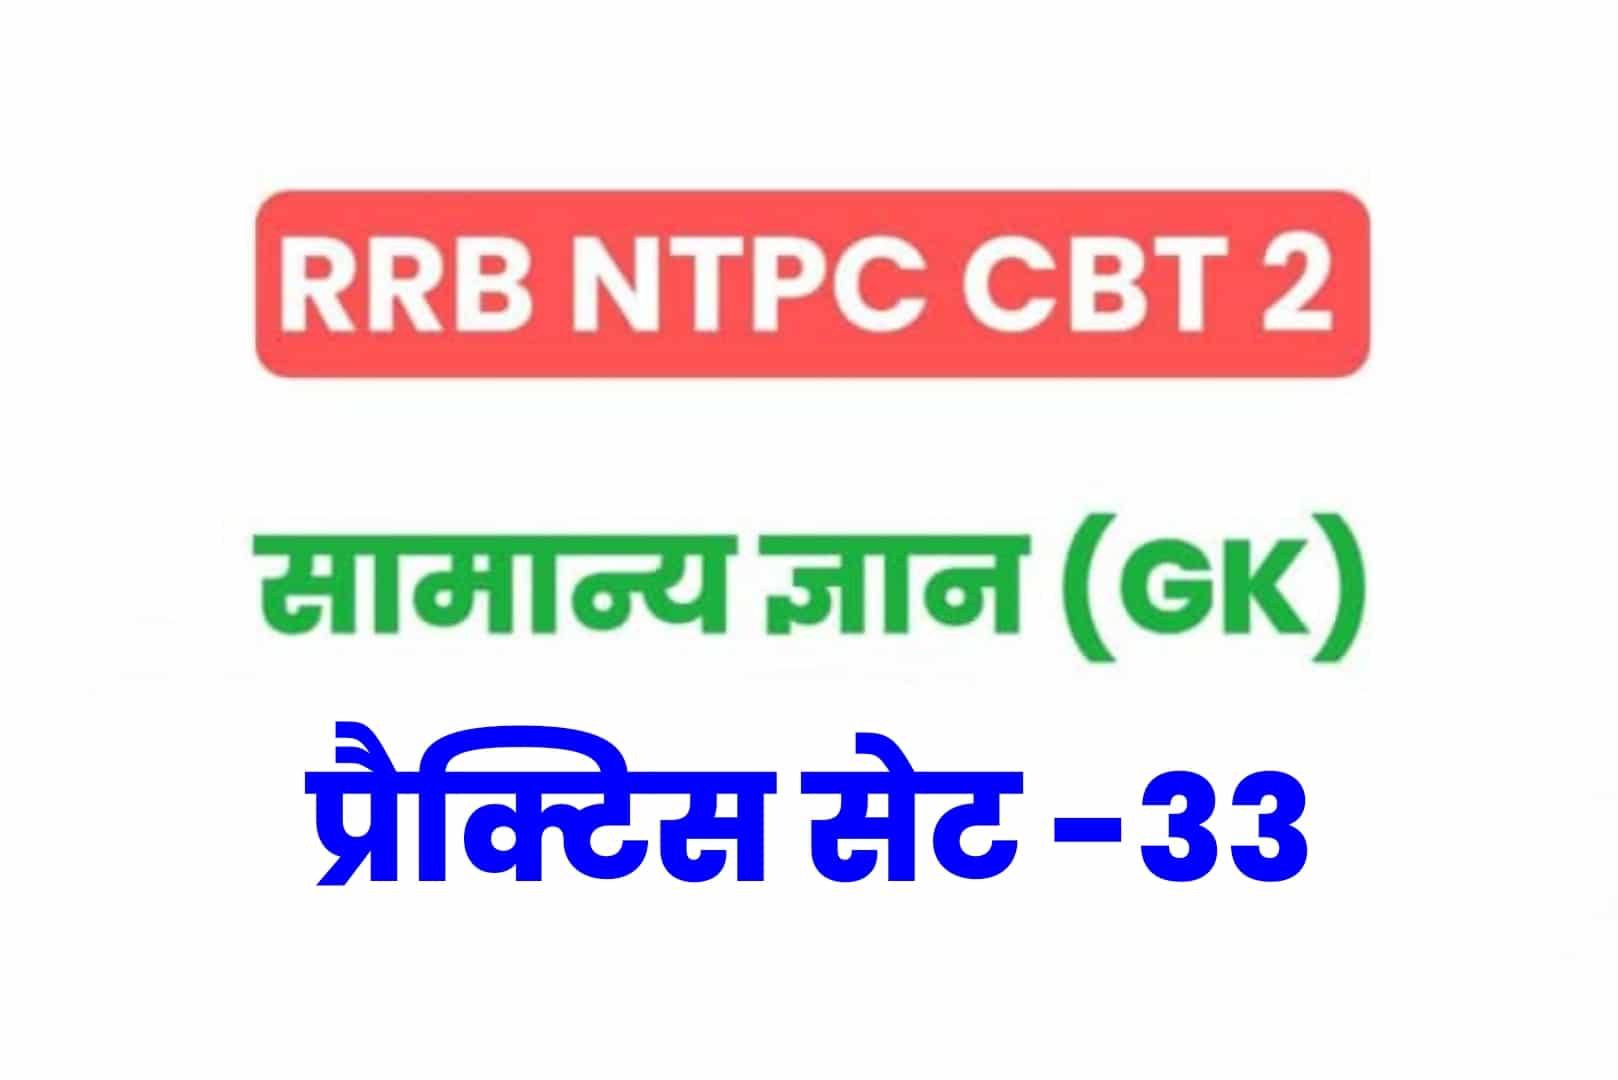 RRB NTPC CBT 2 GK प्रैक्टिस सेट 33: परीक्षा में जानें से पहले सामान्य ज्ञान के 25 महत्वपूर्ण  MCQ को अवश्य पढ़ें